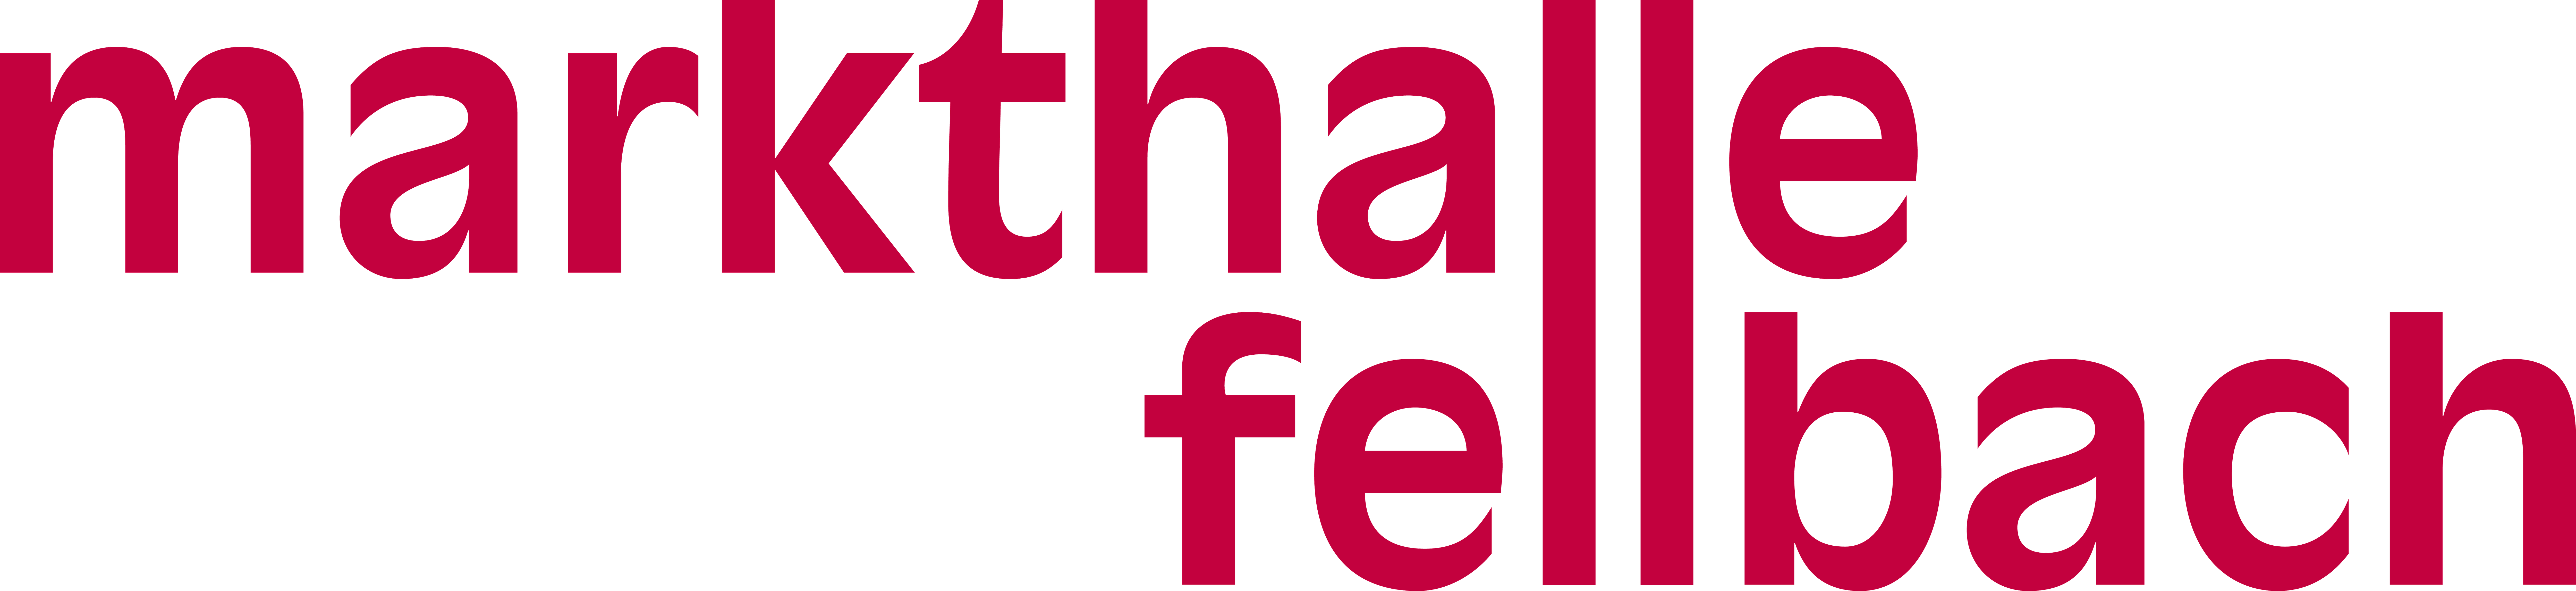 Logo Fellbach